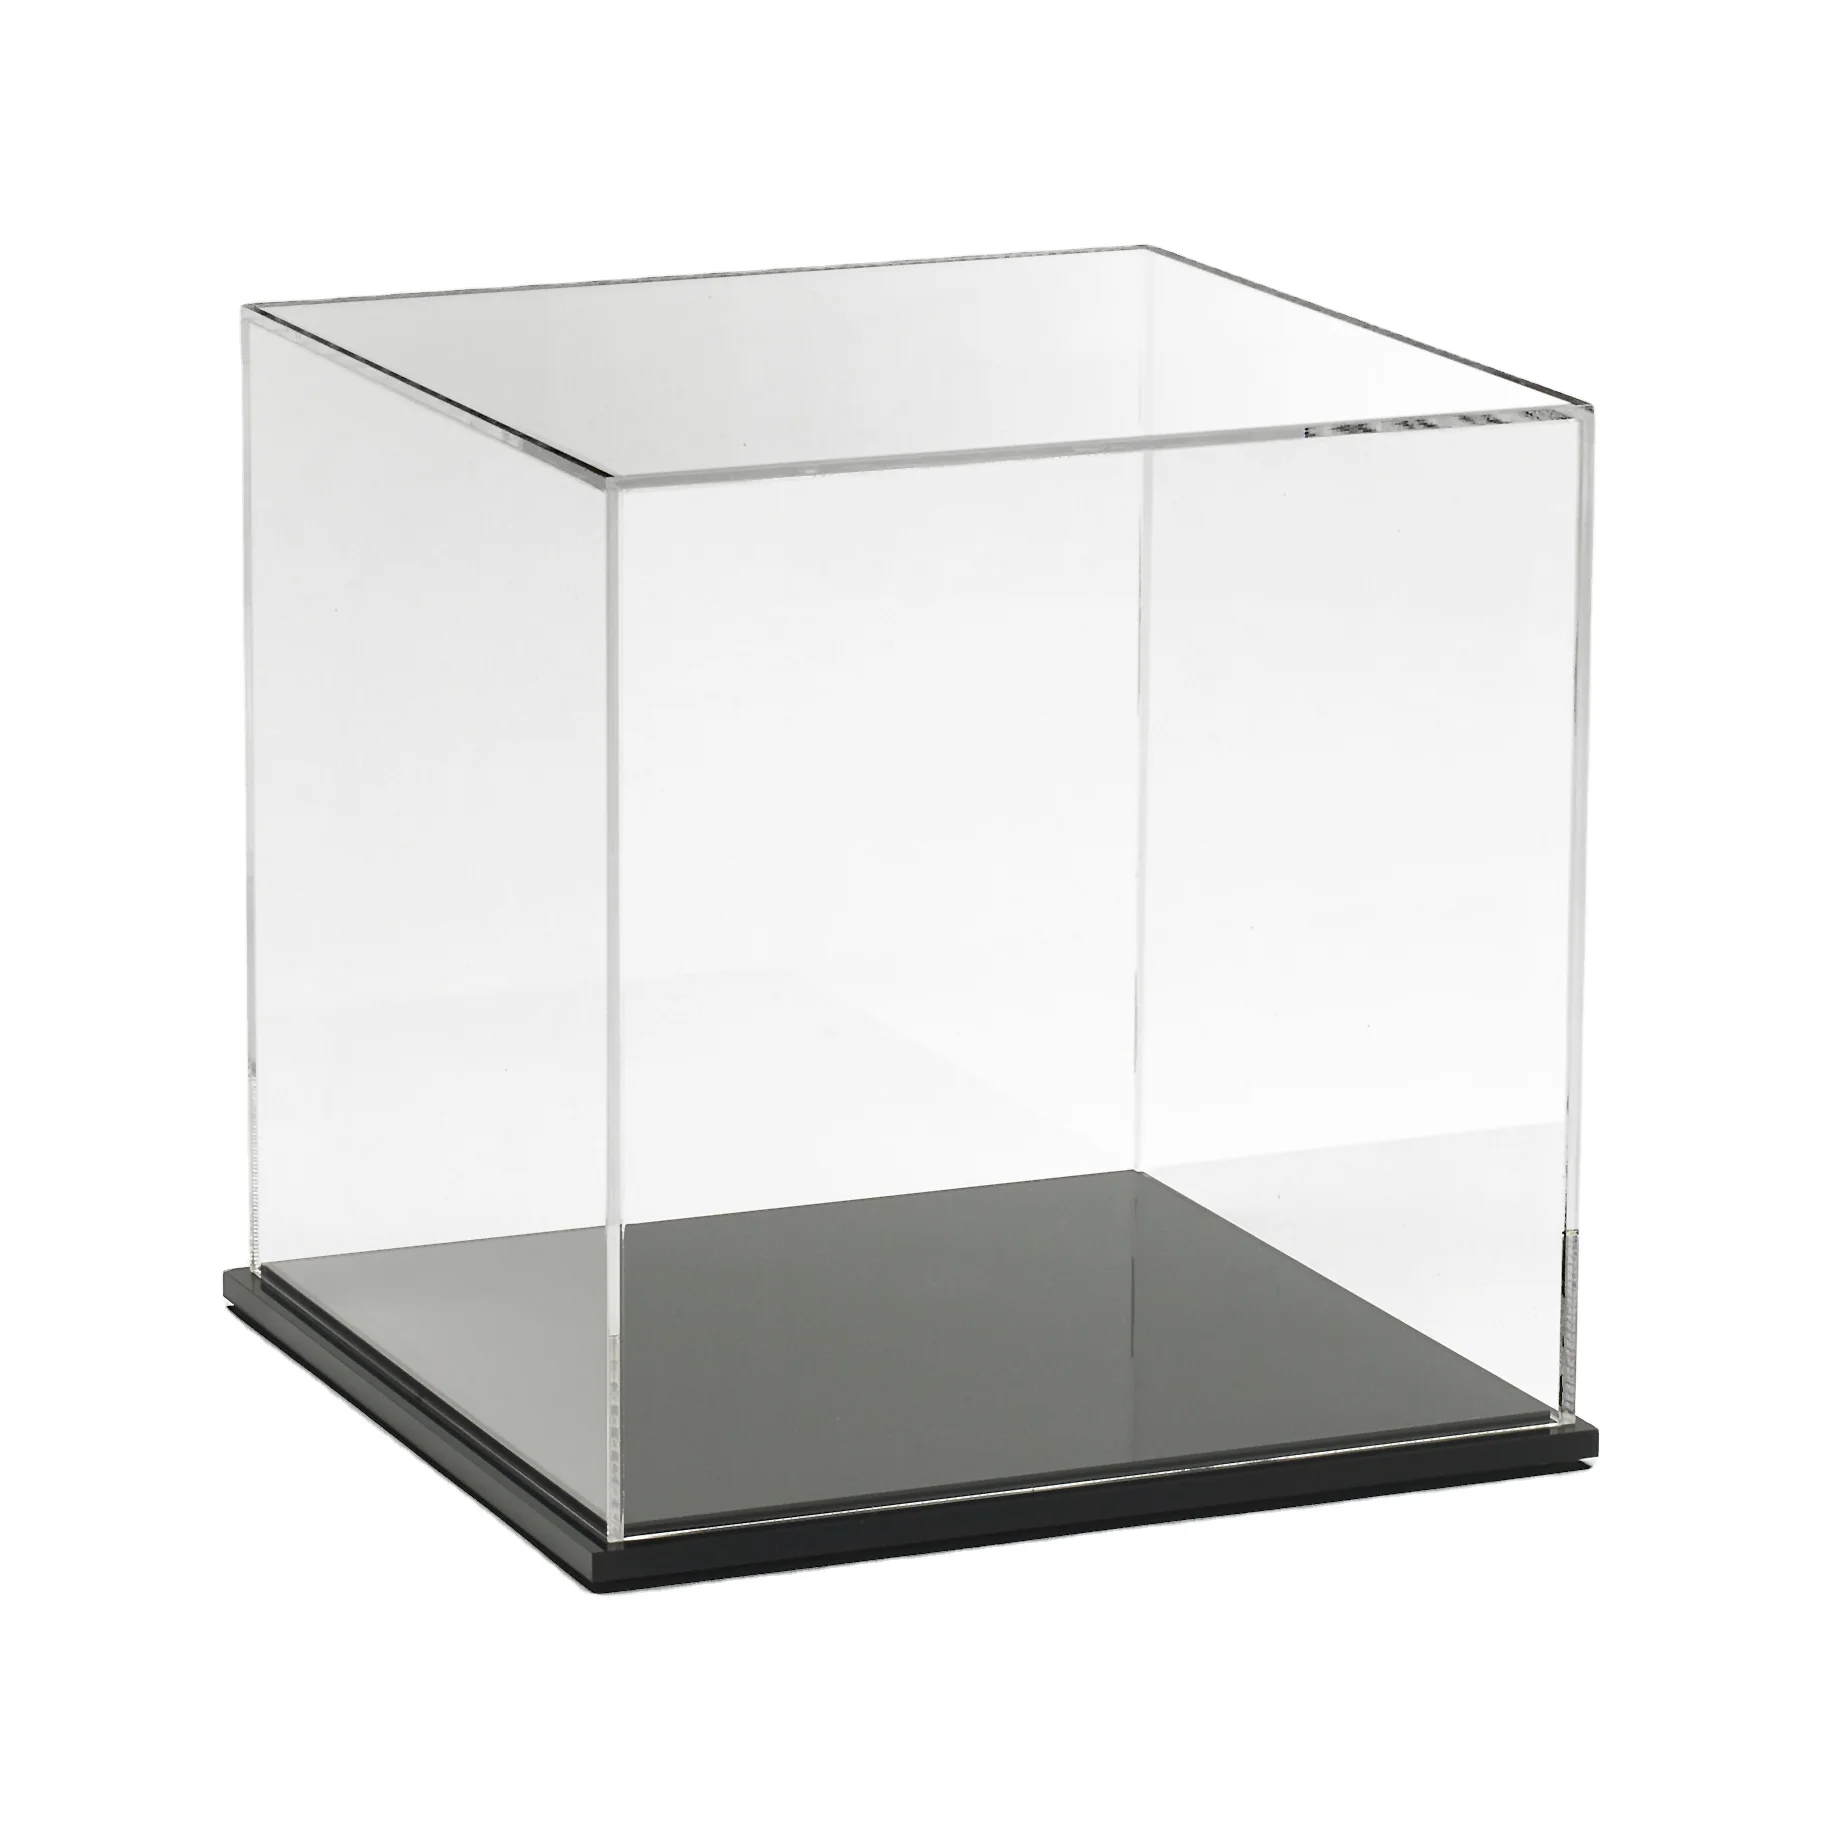 Герметичный стеклянный куб 70x70x130